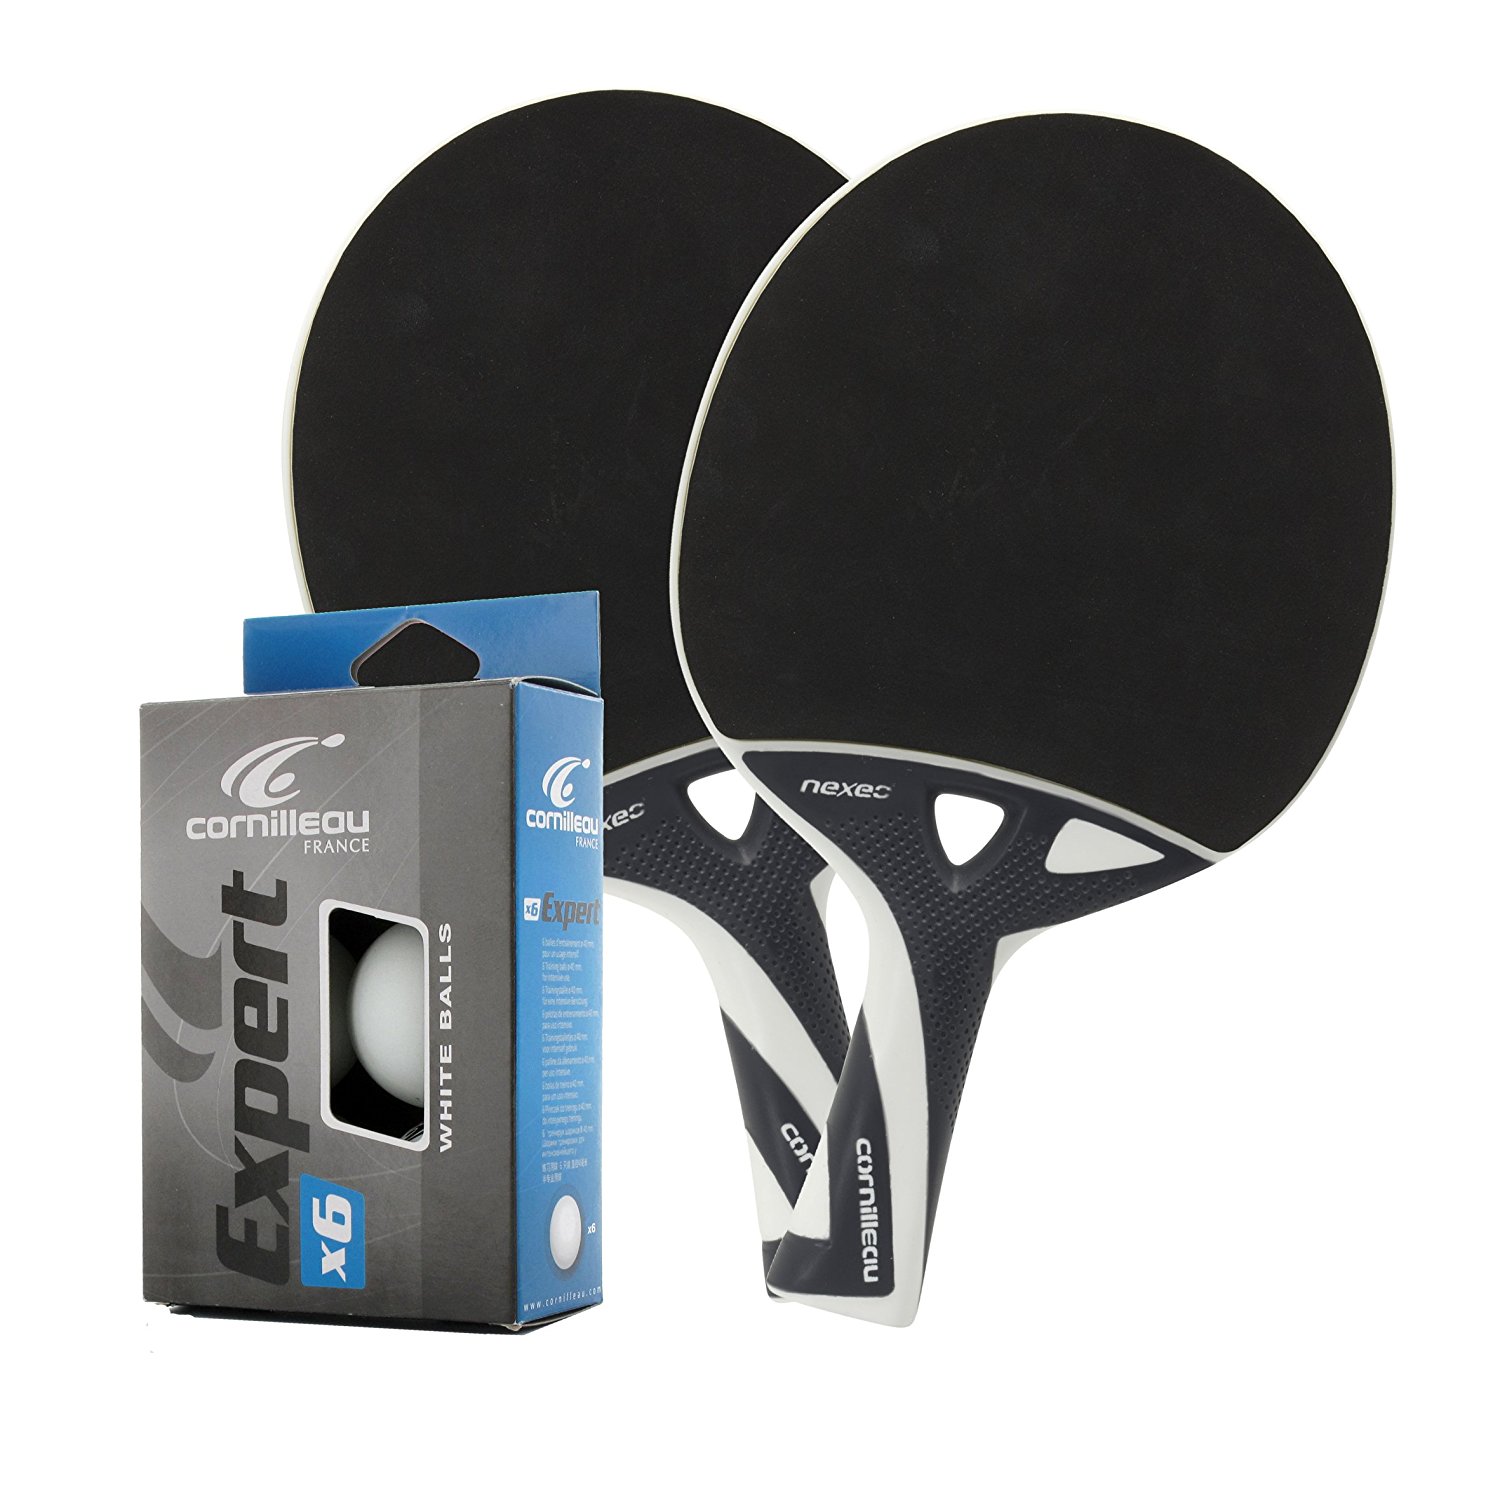 Bälle Cornilleau Nexeo X70 Outdoor Tischtennisschläger 2er Set inkl NEU 